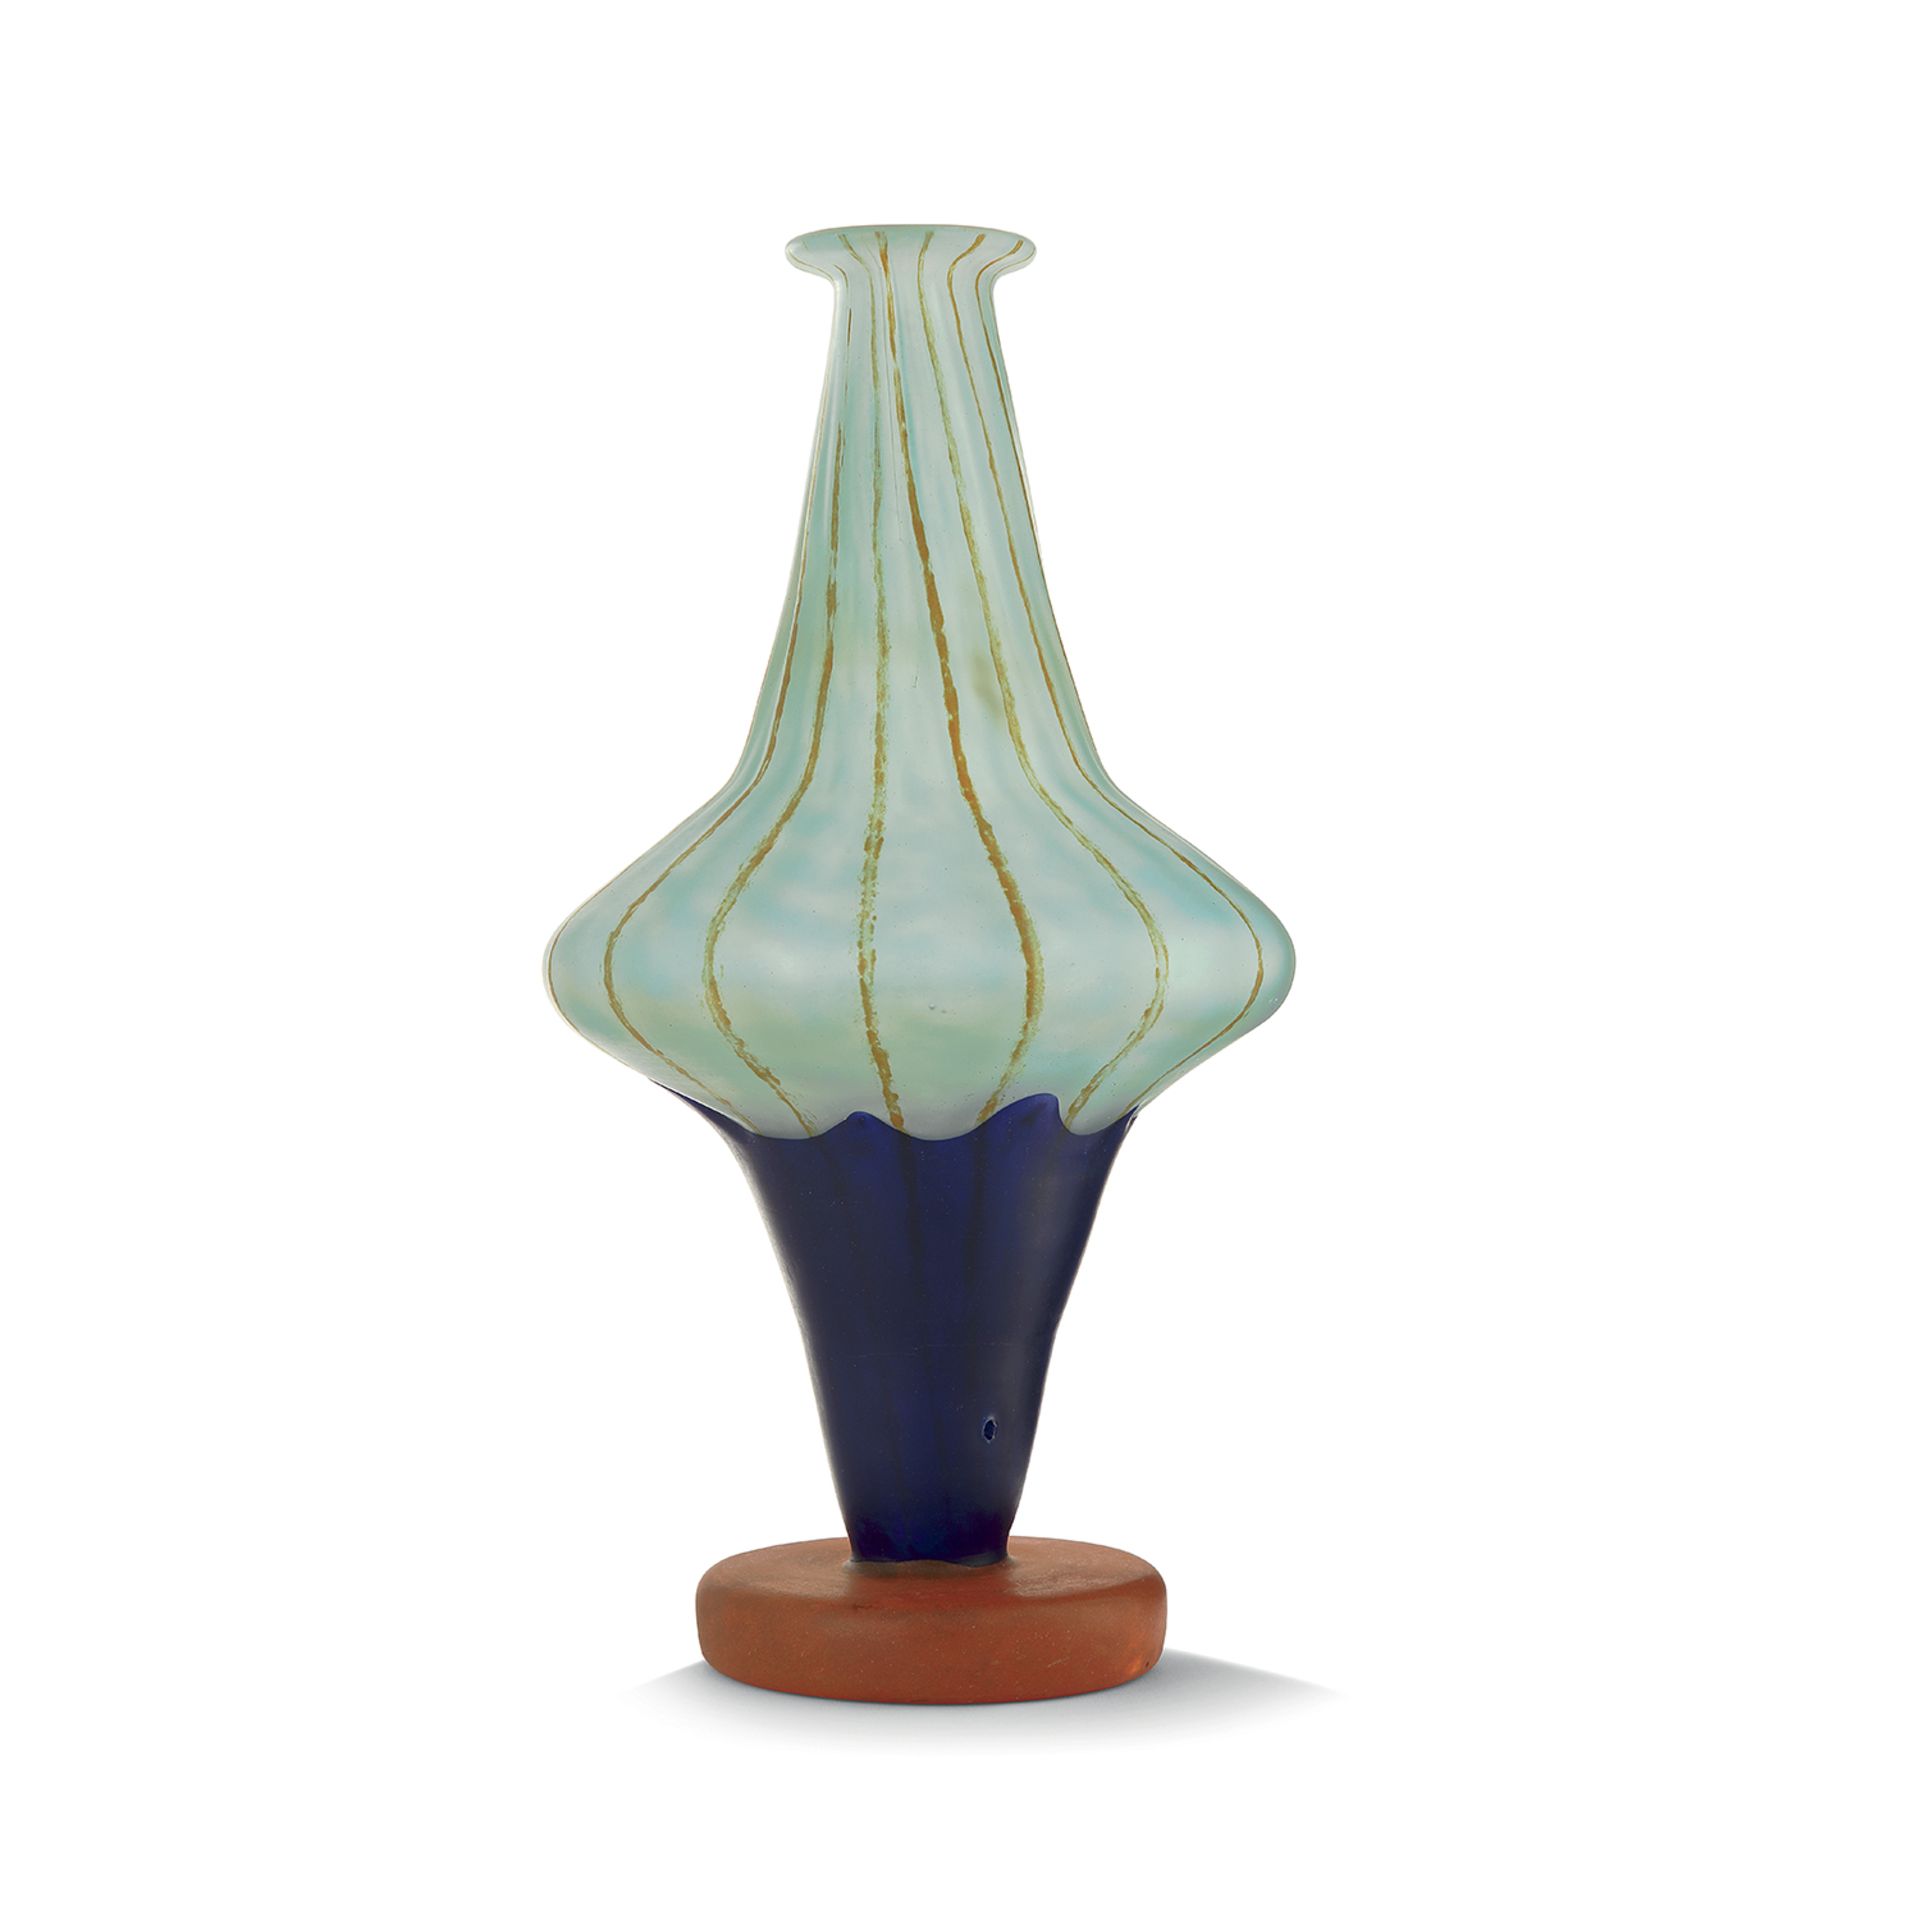 SCHNEIDER - Vase toupie fileté, modèle dessiné circa 1921, formé de trois [...]